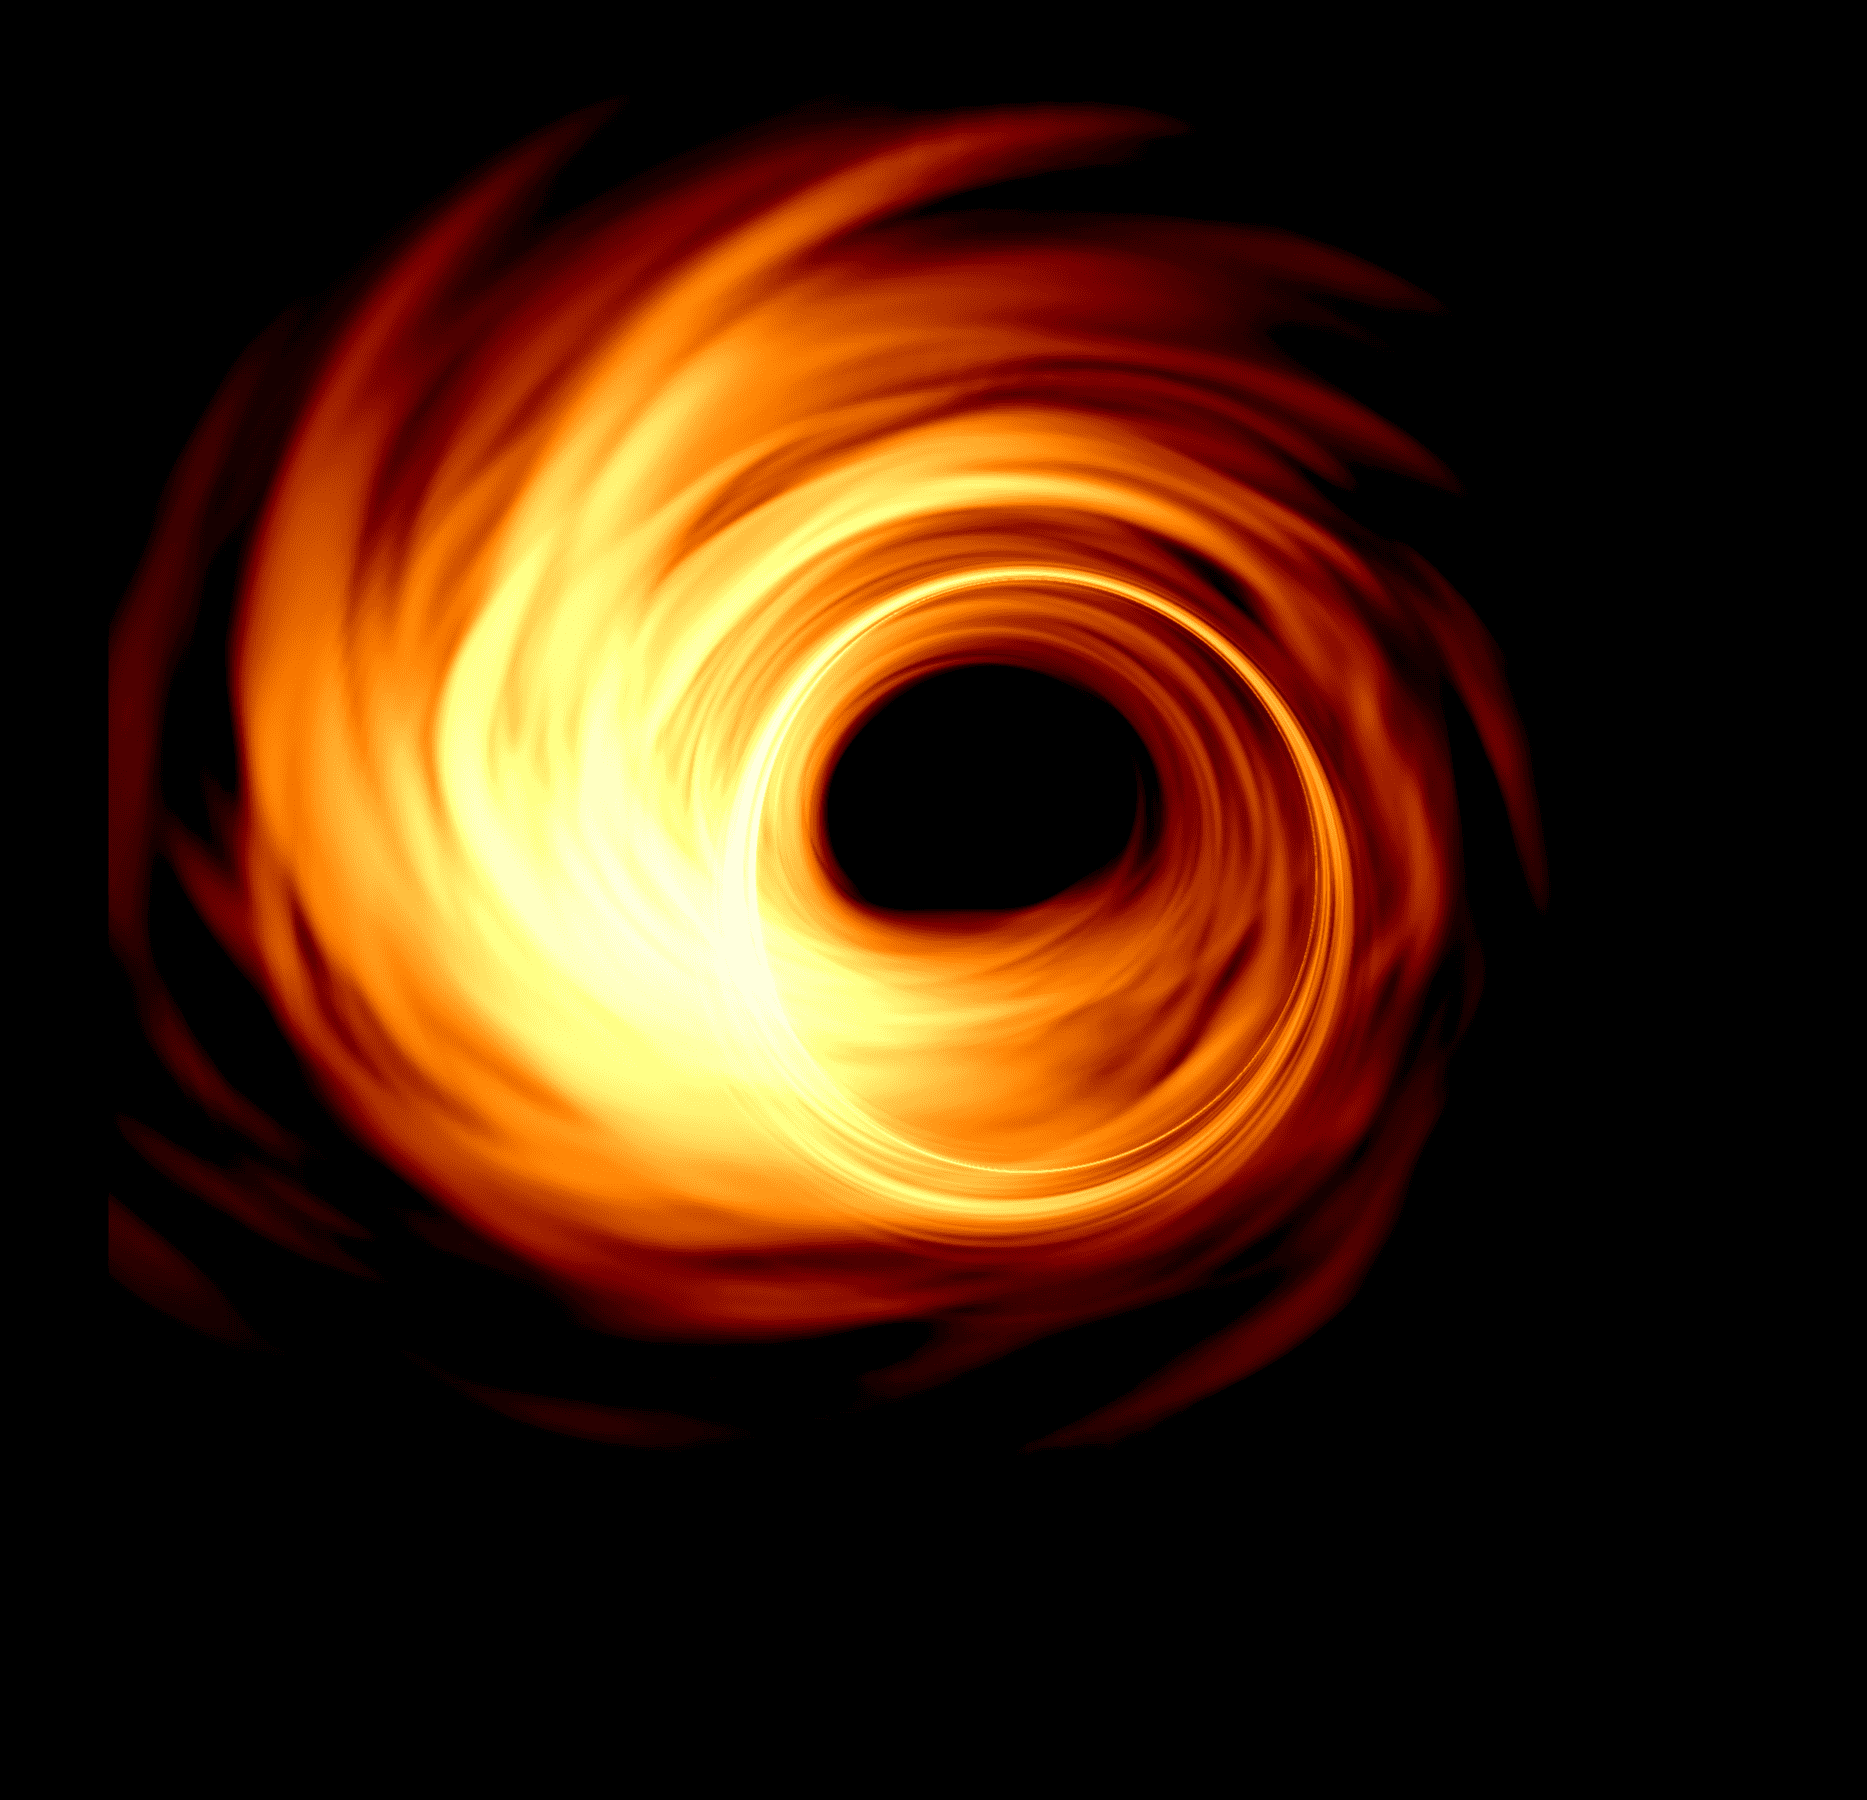 銀河系巨大ブラックホール周辺の磁場が新たな視点で明らかに